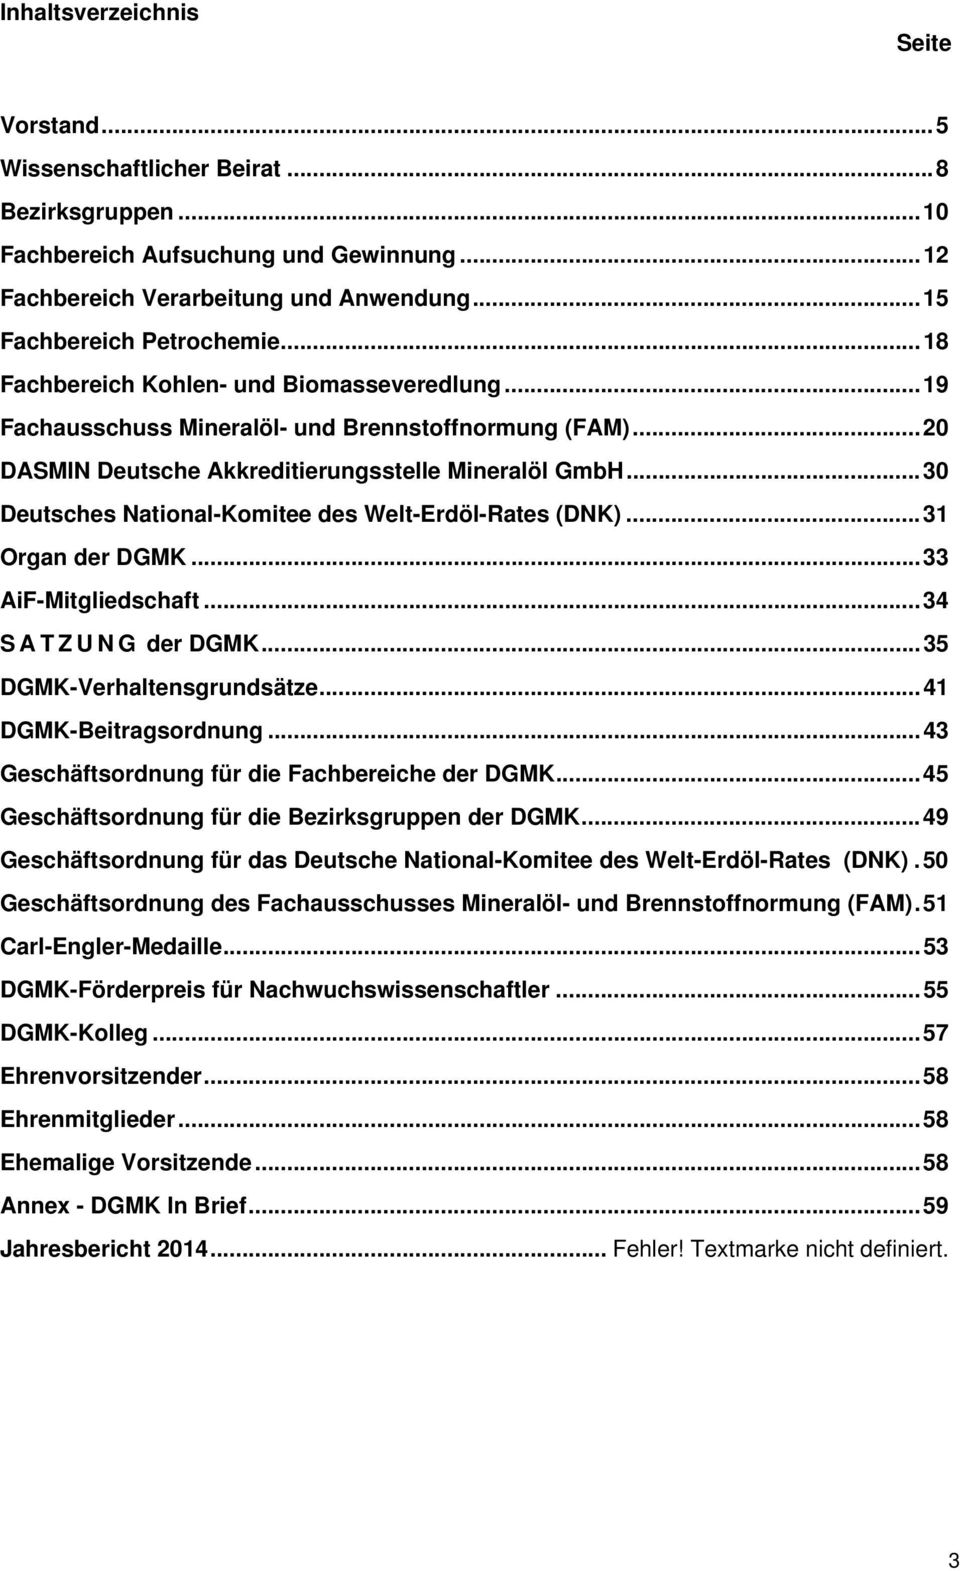 .. 30 Deutsches National-Komitee des Welt-Erdöl-Rates (DNK)... 31 Organ der DGMK... 33 AiF-Mitgliedschaft... 34 S A T Z U N G der DGMK... 35 DGMK-Verhaltensgrundsätze... 41 DGMK-Beitragsordnung.